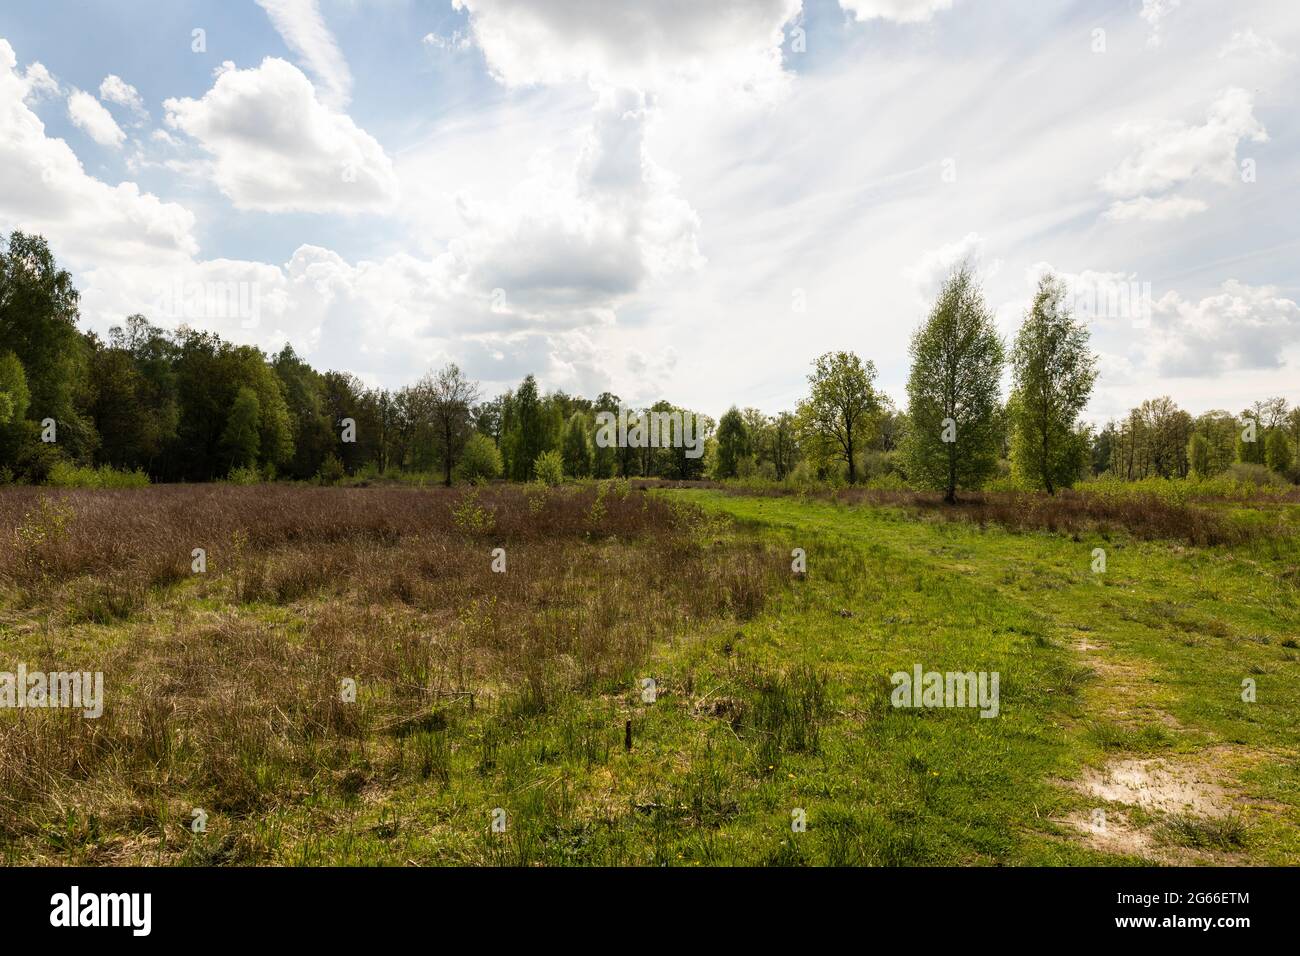 Zona torba De Peel brughiera, campagna olandese nei Paesi Bassi durante la primavera con bella erba verde, erica, alberi e verde in una giornata nuvolosa Foto Stock